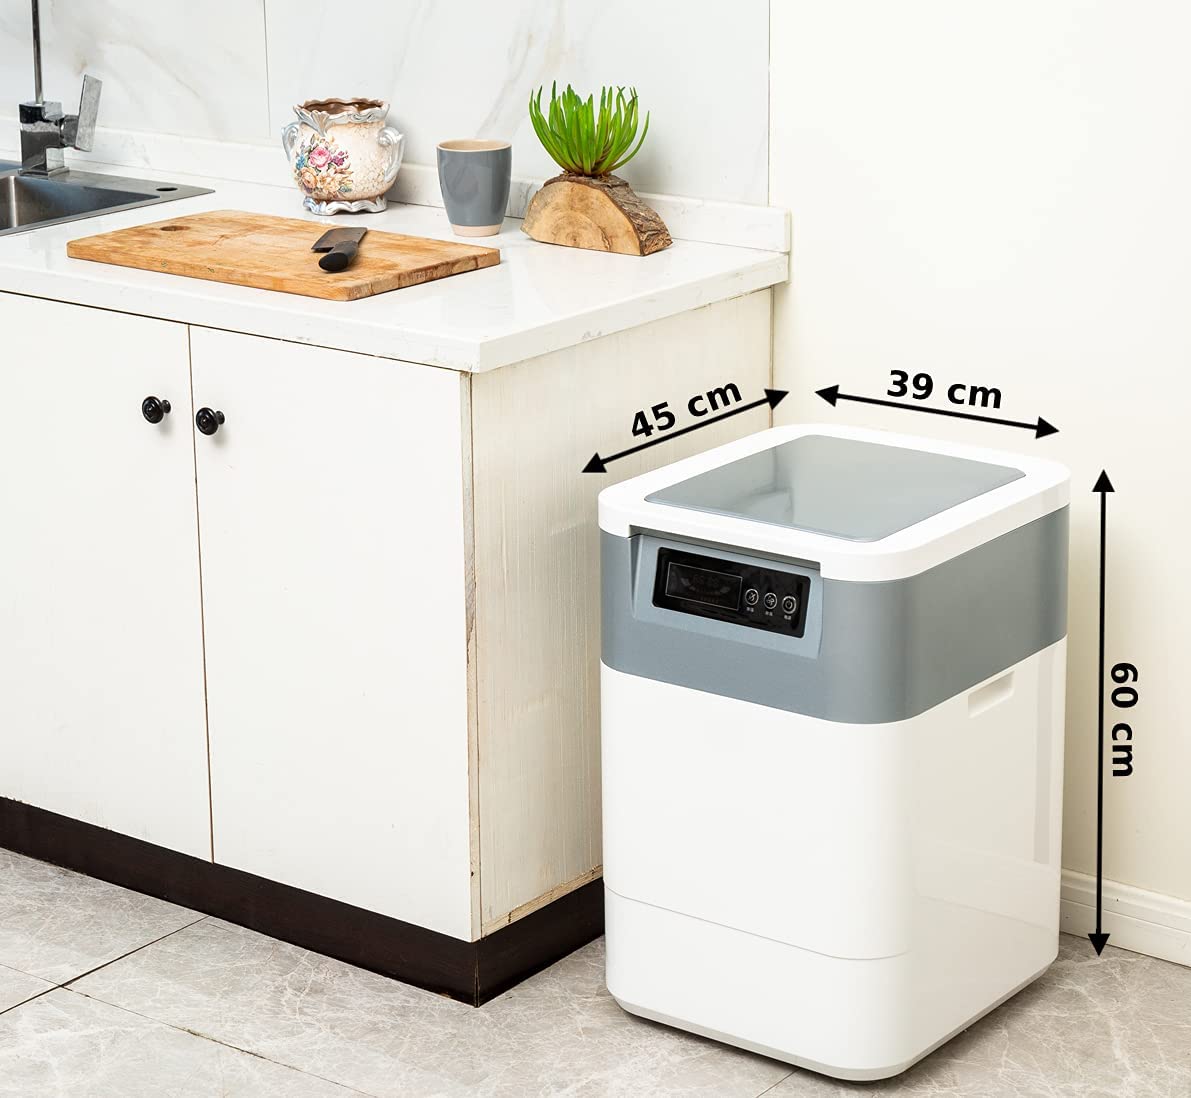 household composter machine kitchen waste disposer